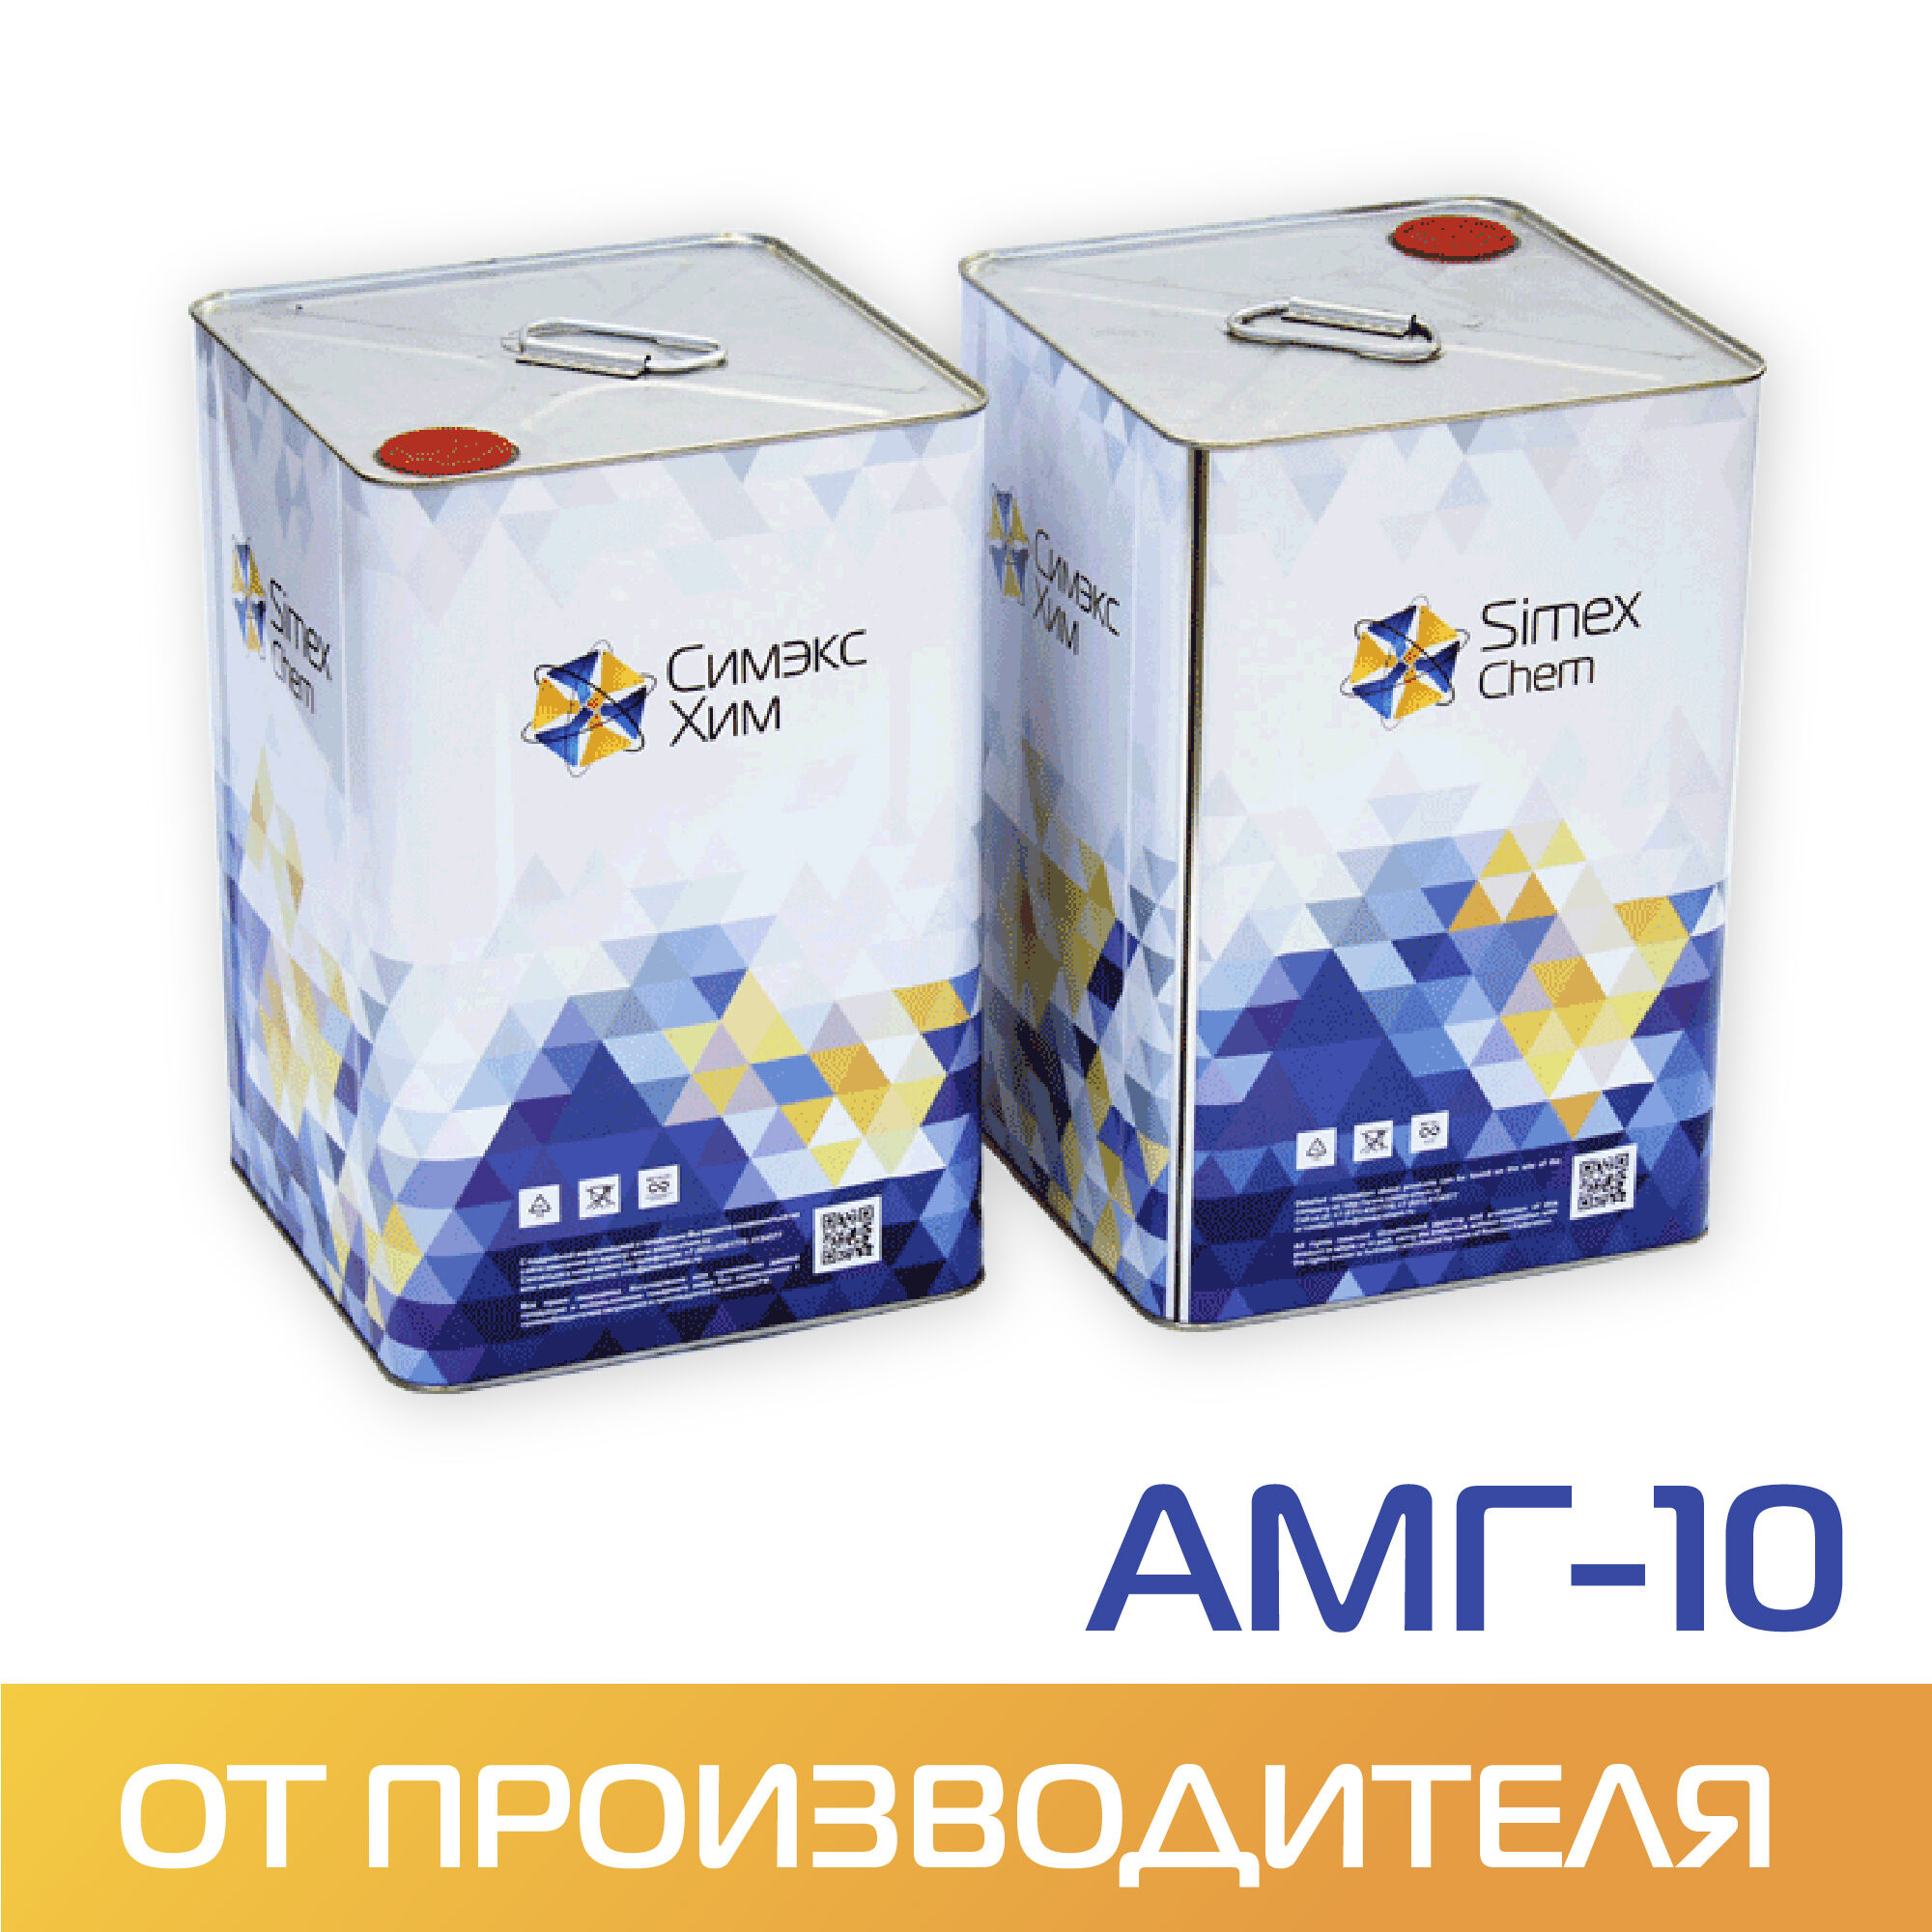 Масло гидравлическое АМГ-10 бидон 14 кг